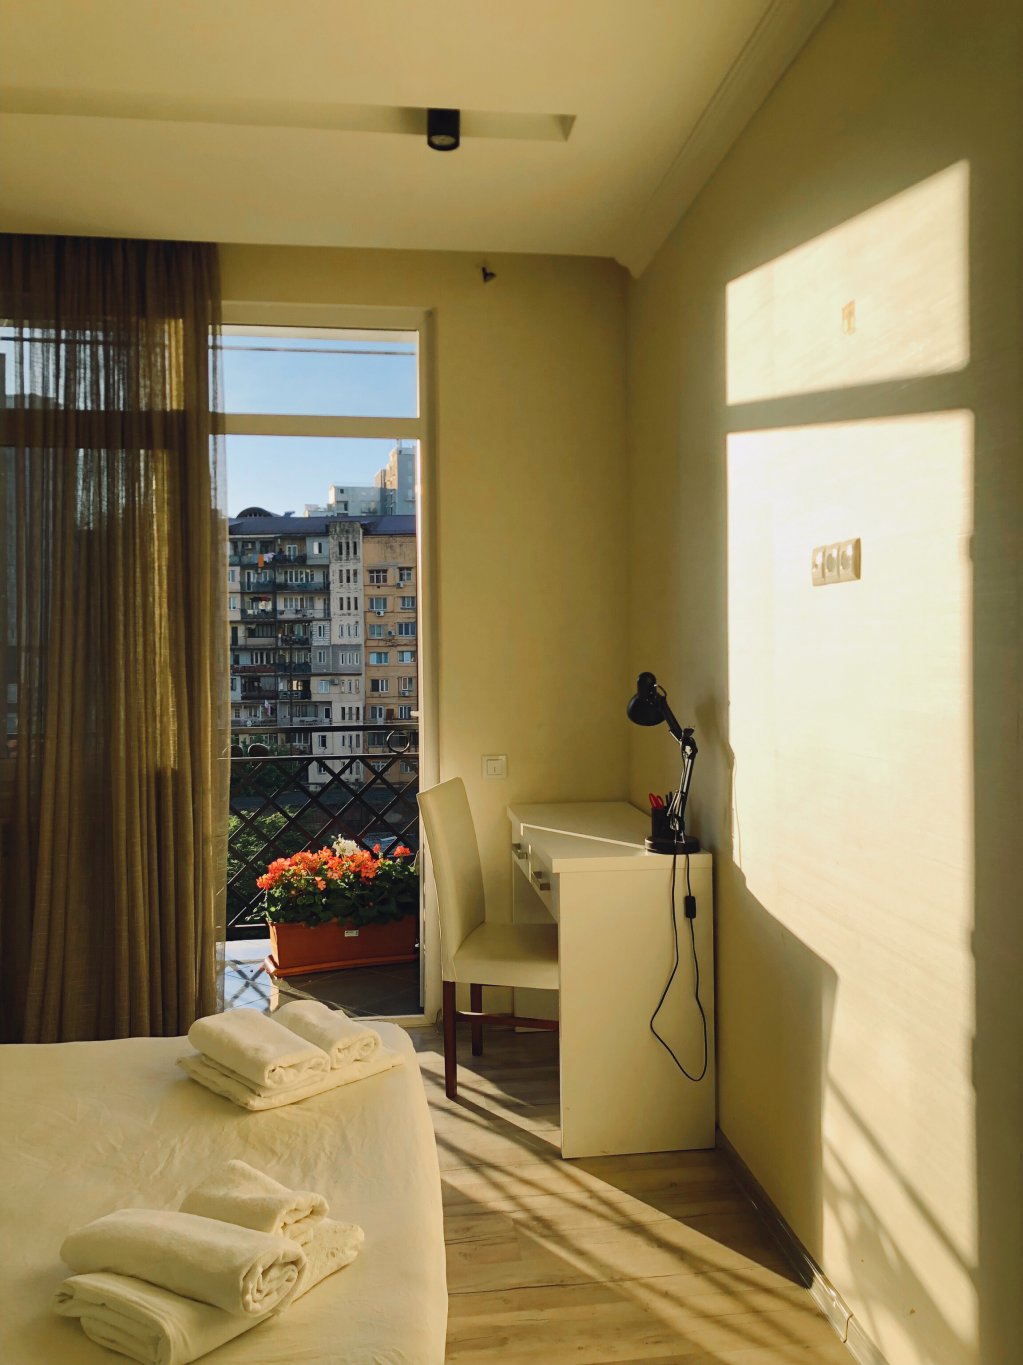 4-комнатная квартира на ул. В.Горгасали id-643 - аренда апартаментов в Батуми